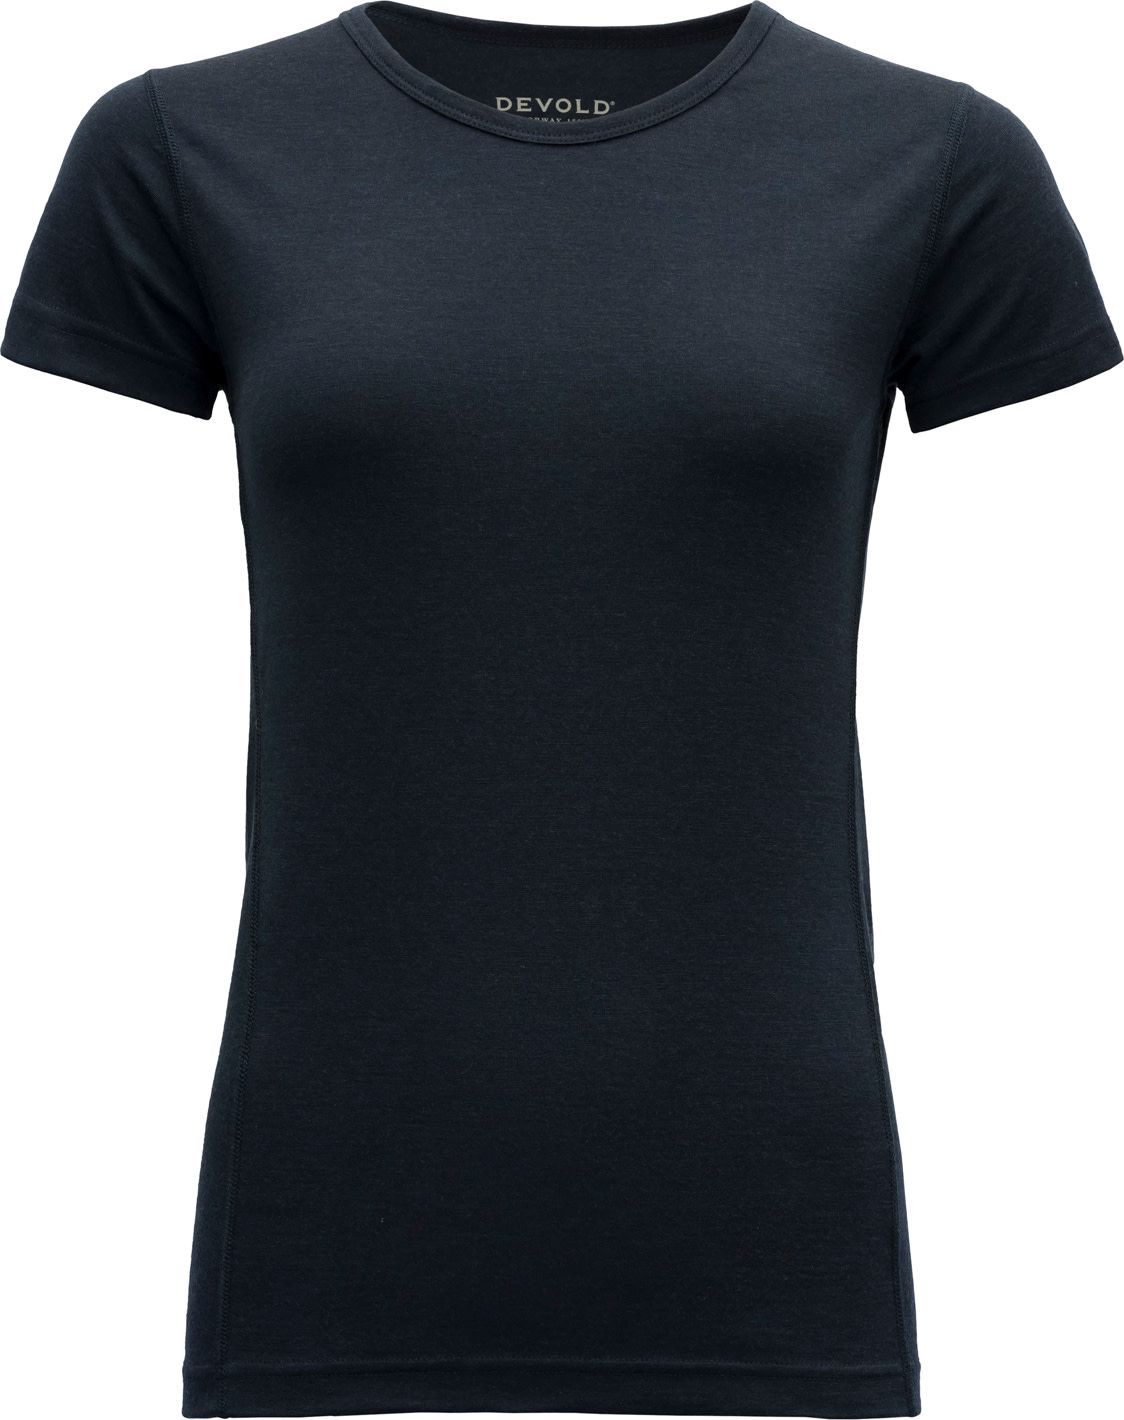 Devold Women's Breeze Merino 150 T-Shirt INK